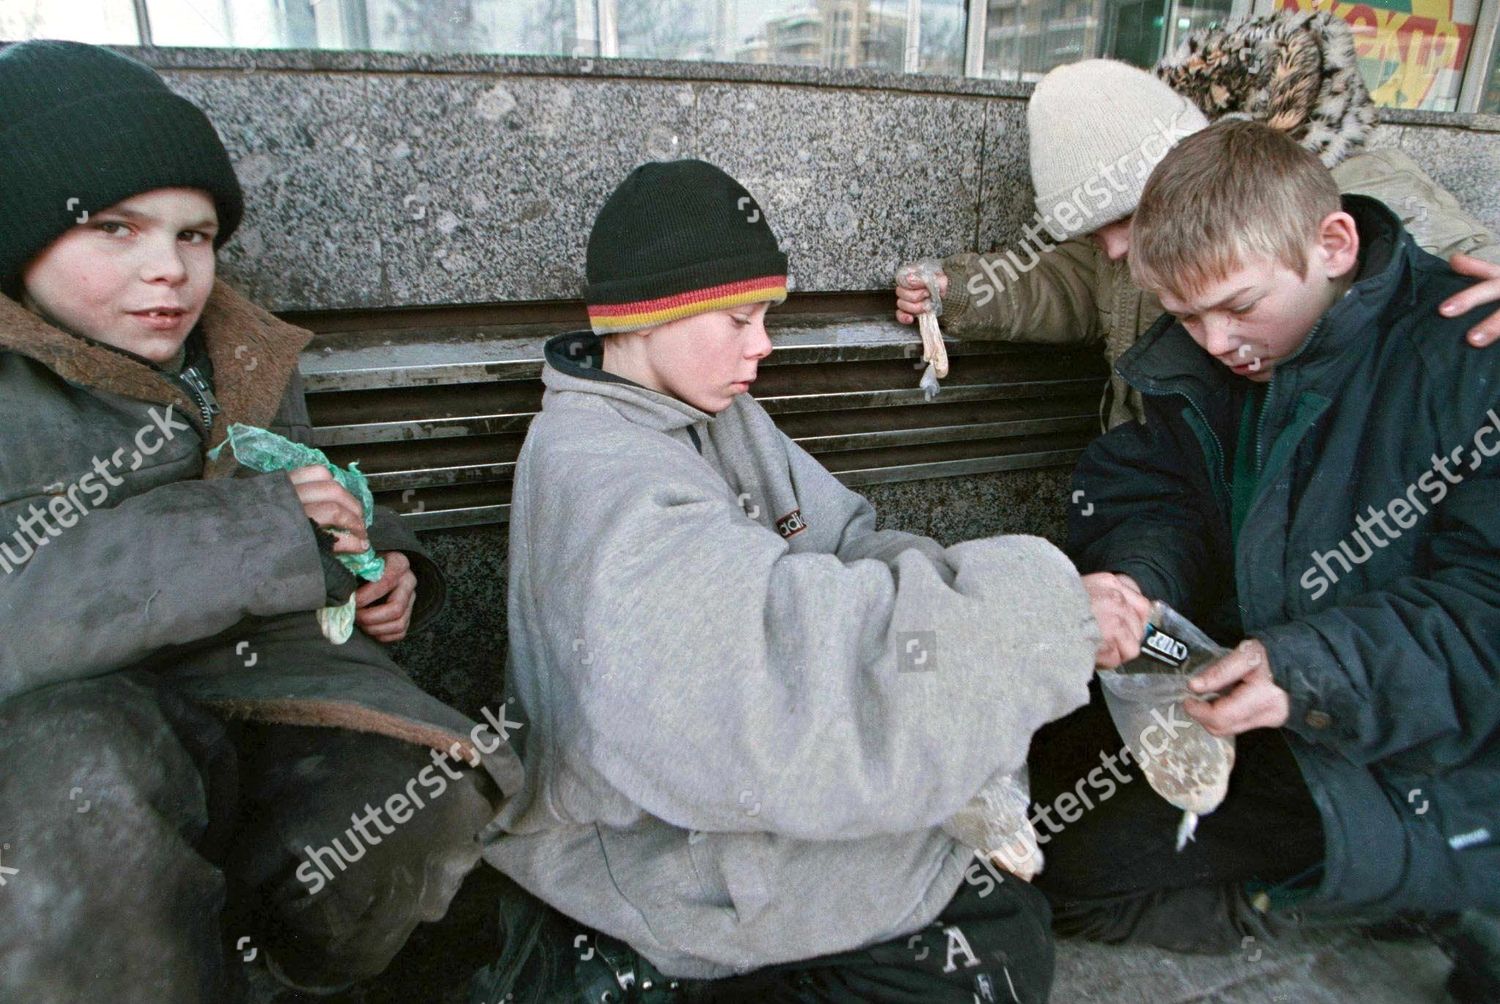 russia-homeless-children-feb-2001-shutterstock-editorial-7672045a.jpg